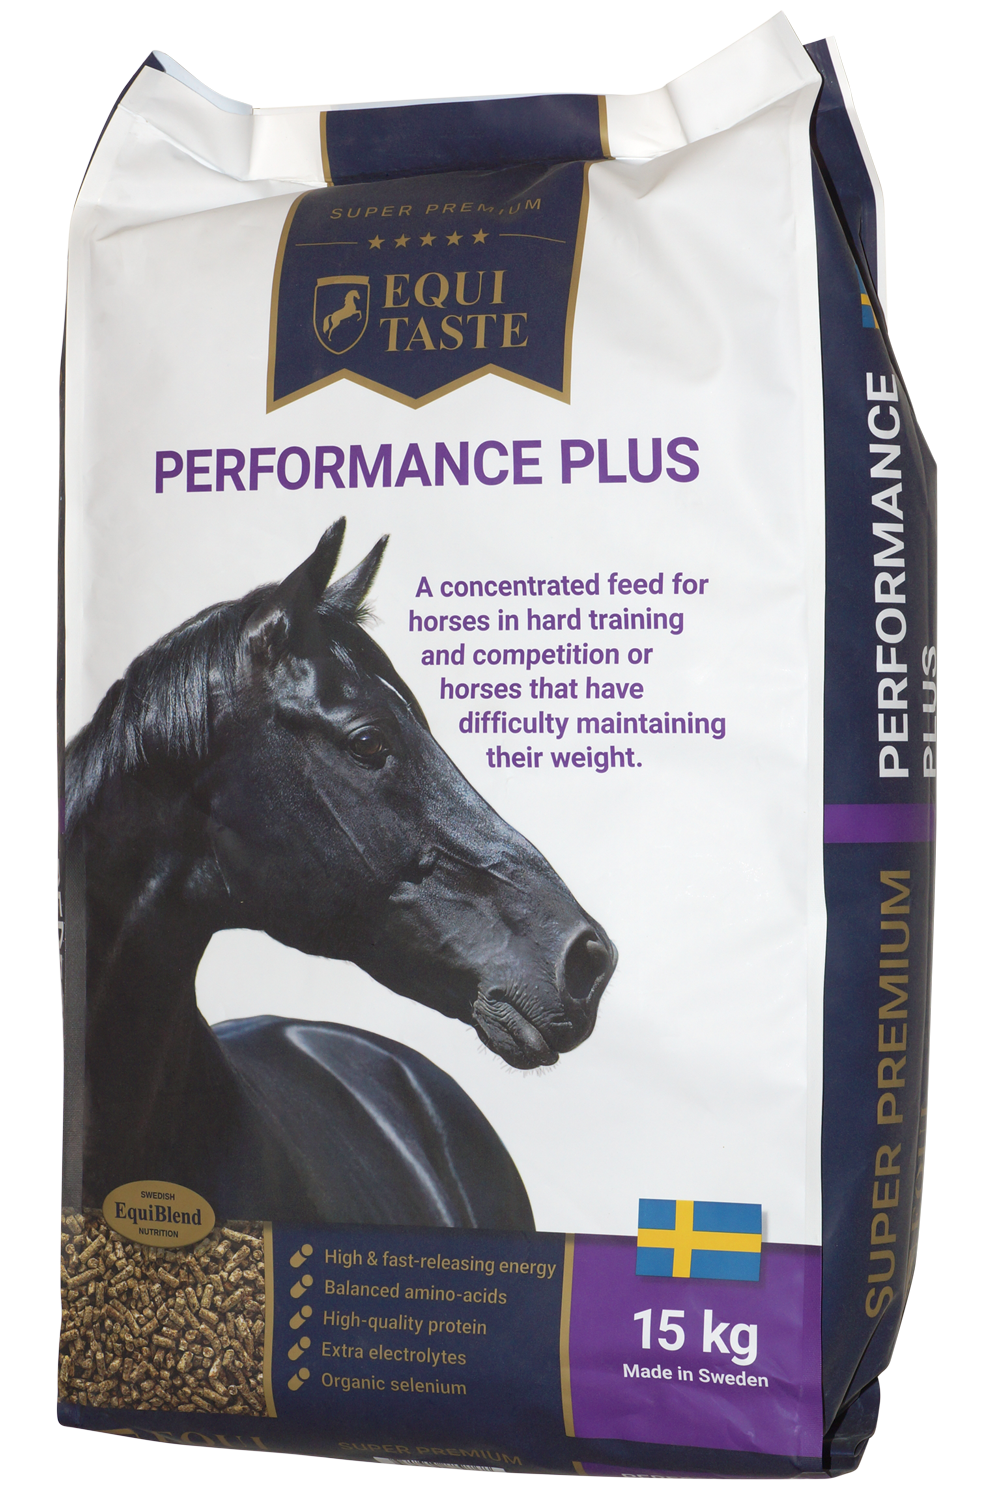 Equitaste performance plus - Pienso para caballos, pienso concentrado, pienso complementario para caballos